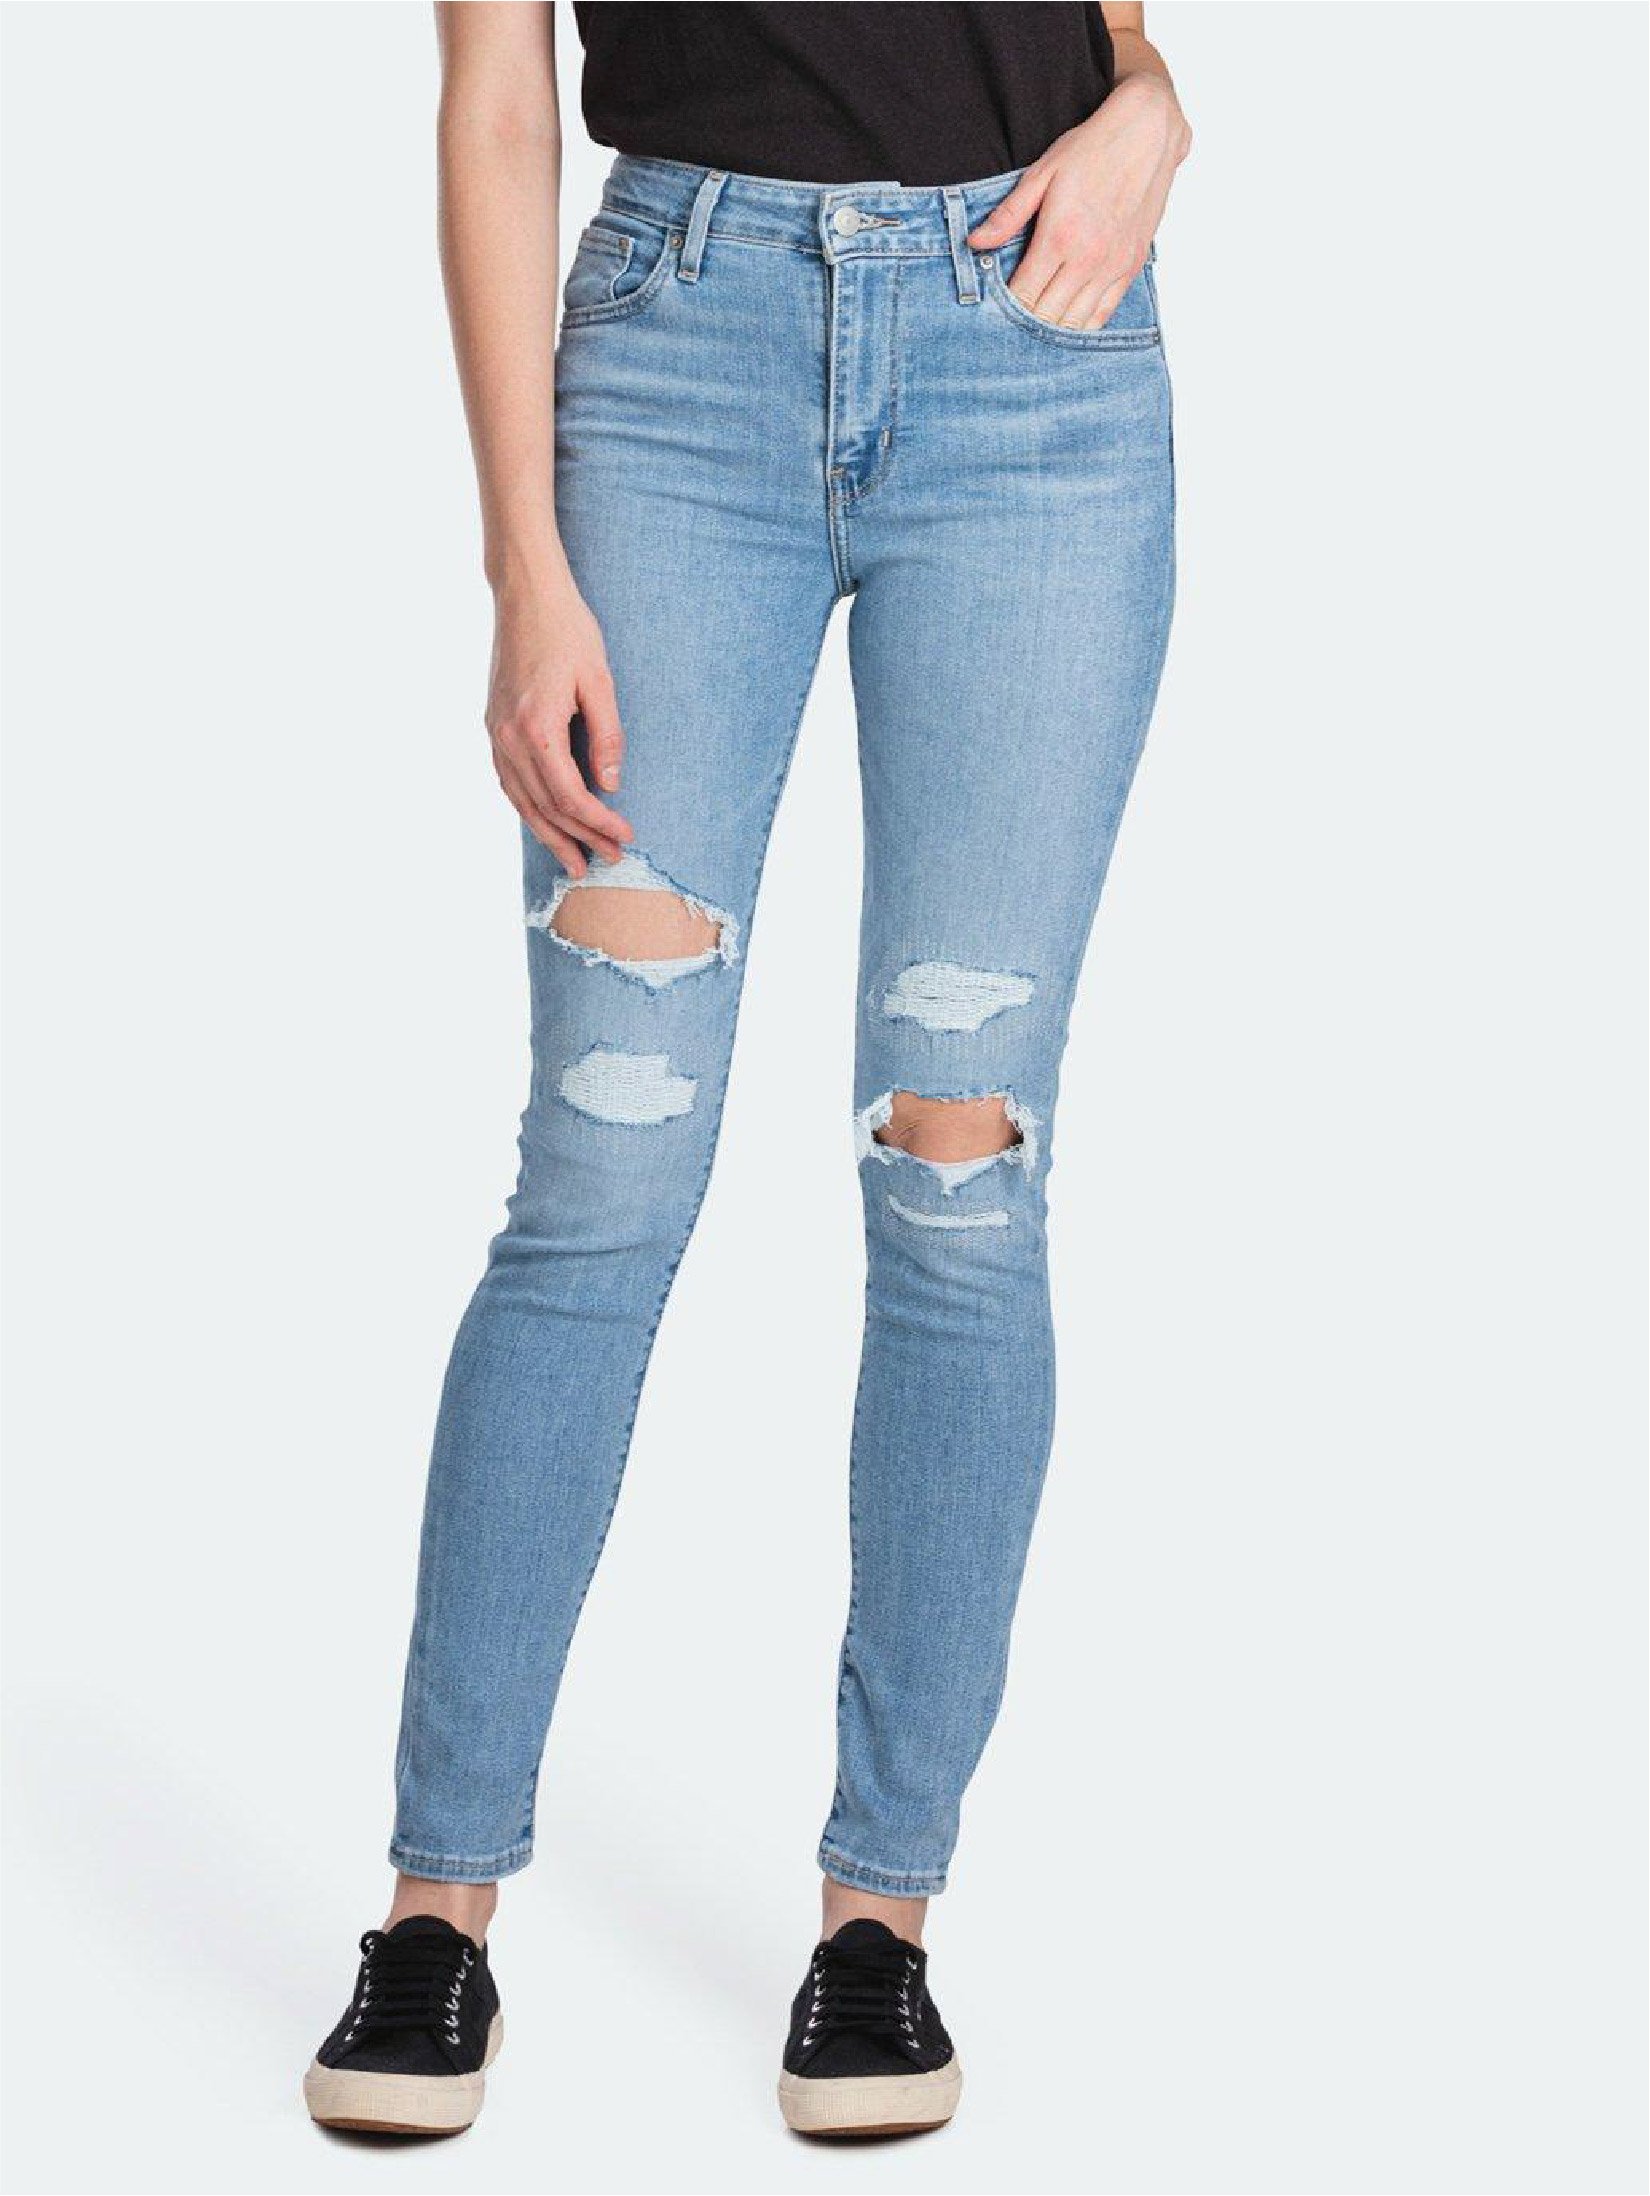 levis jeans hk